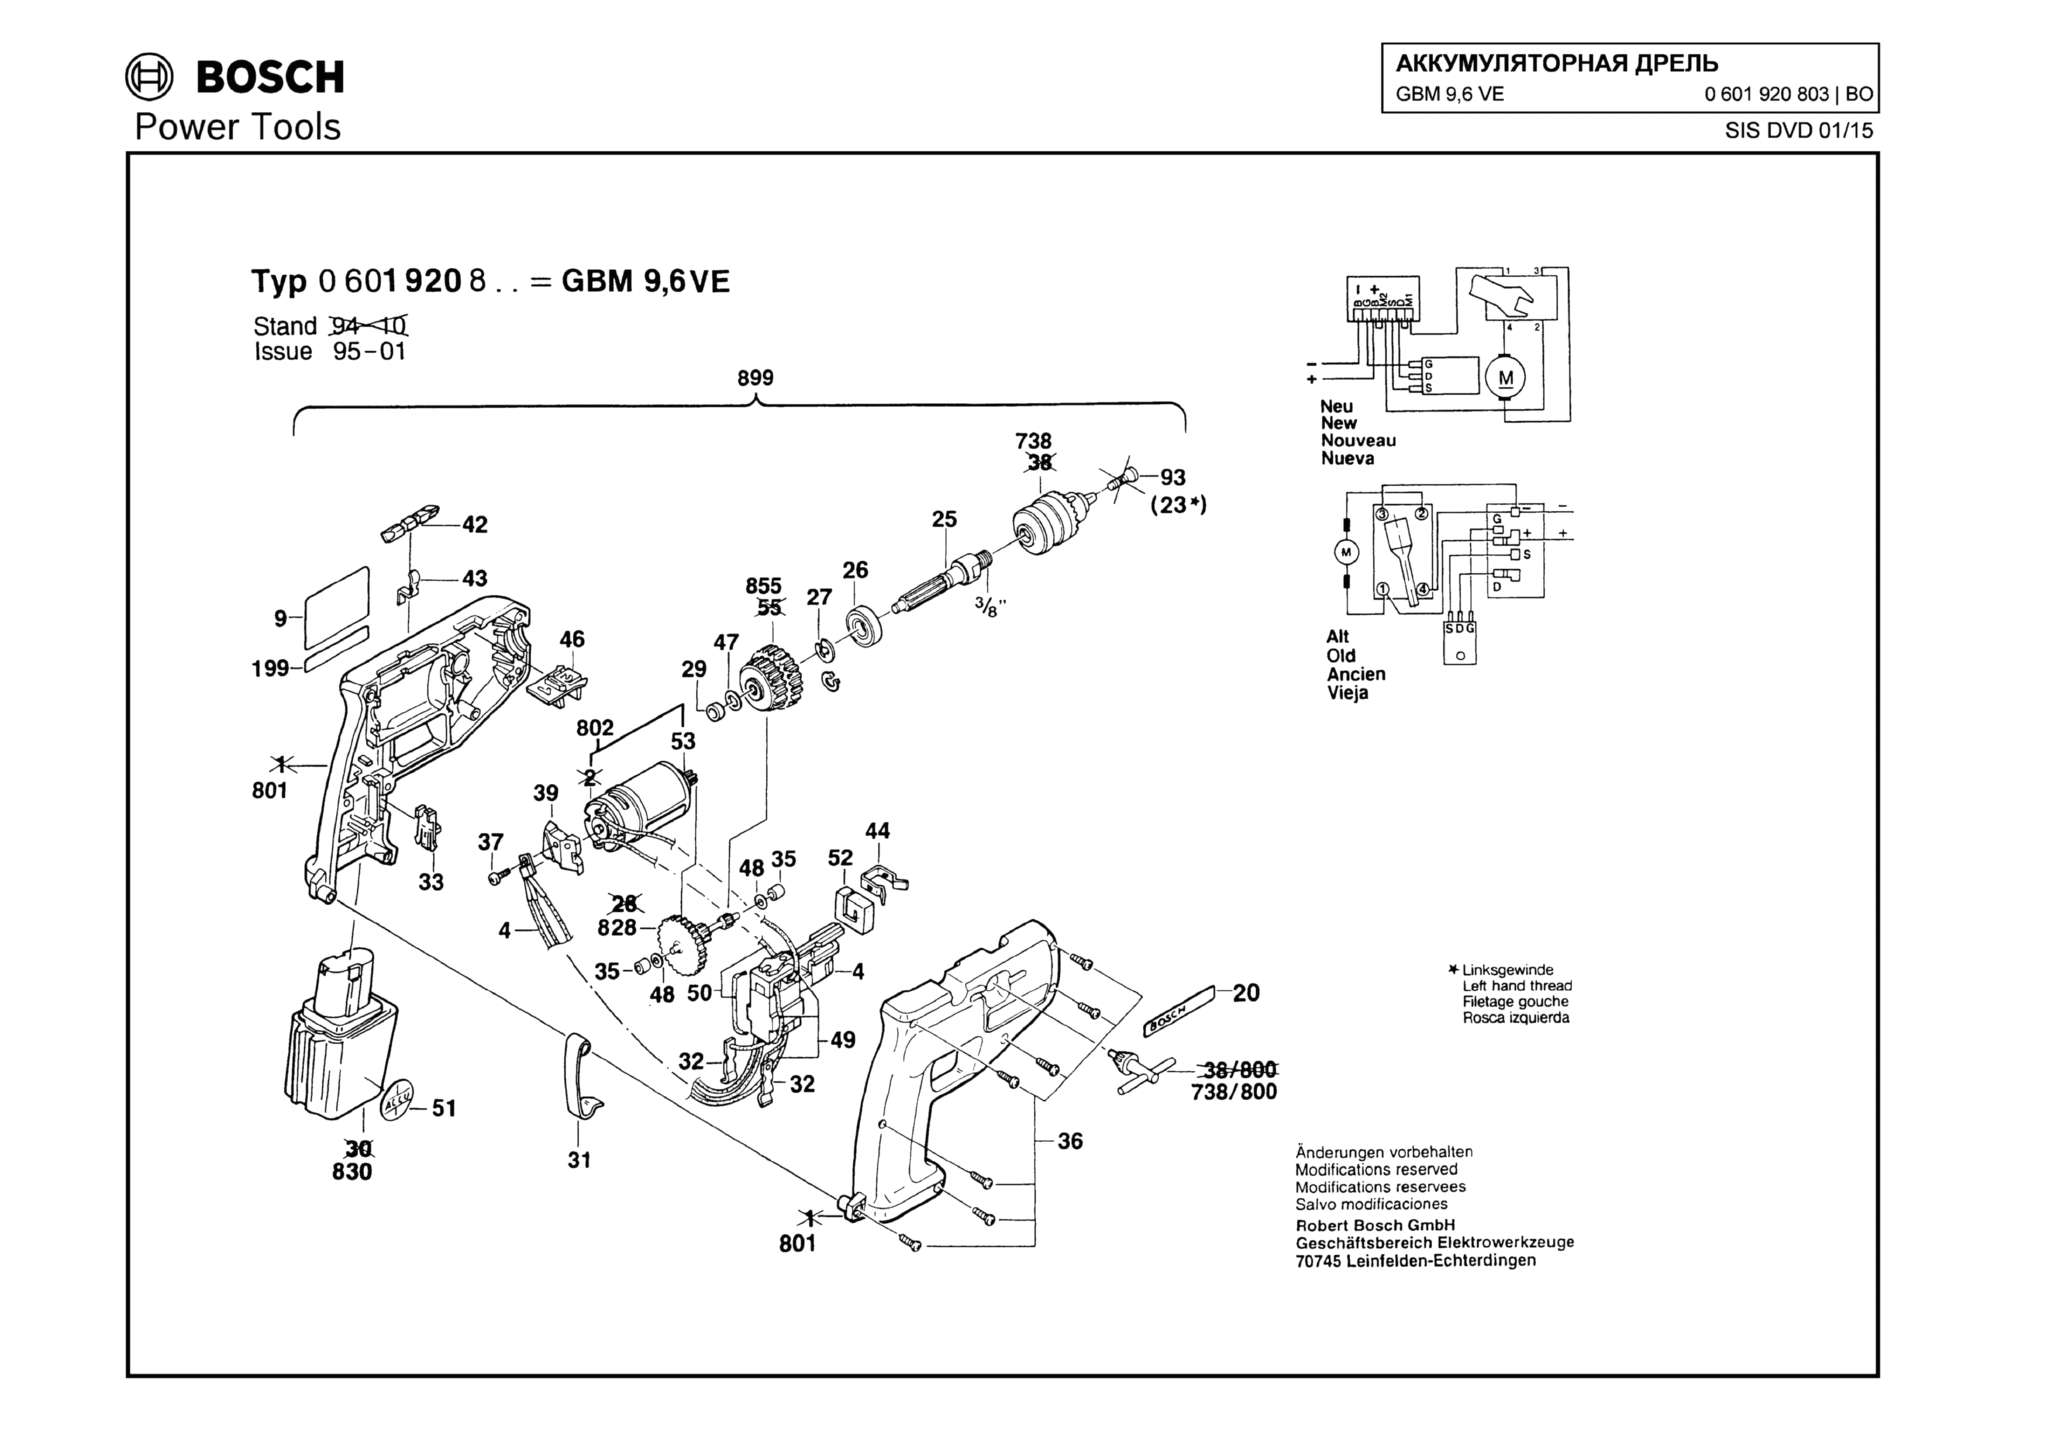 Запчасти, схема и деталировка Bosch GBM 9,6 VE (ТИП 0601920803)